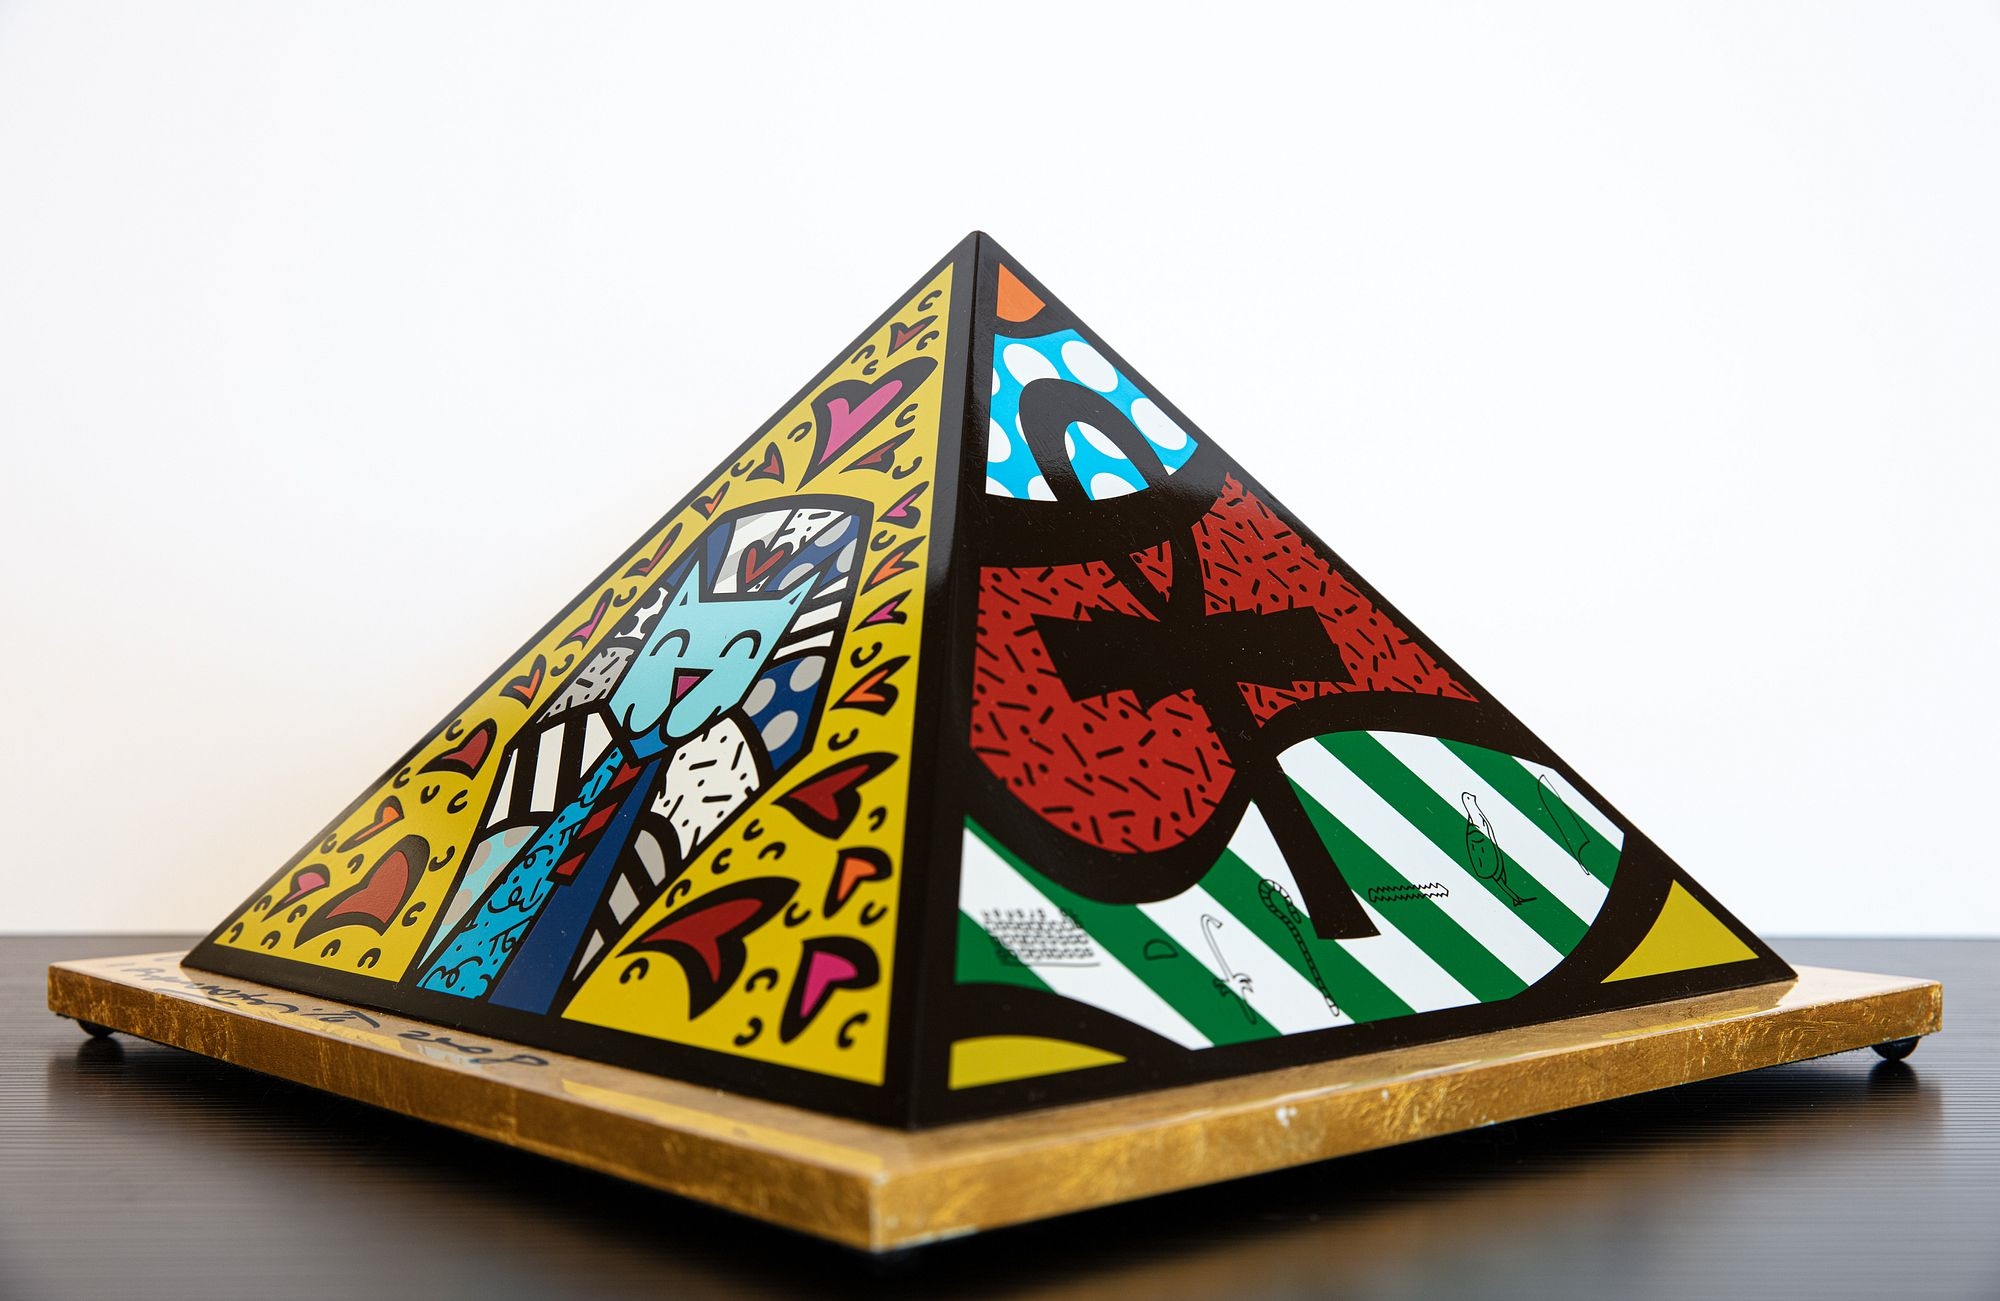 Pyramid by Romero Britto, 2008 and 2010